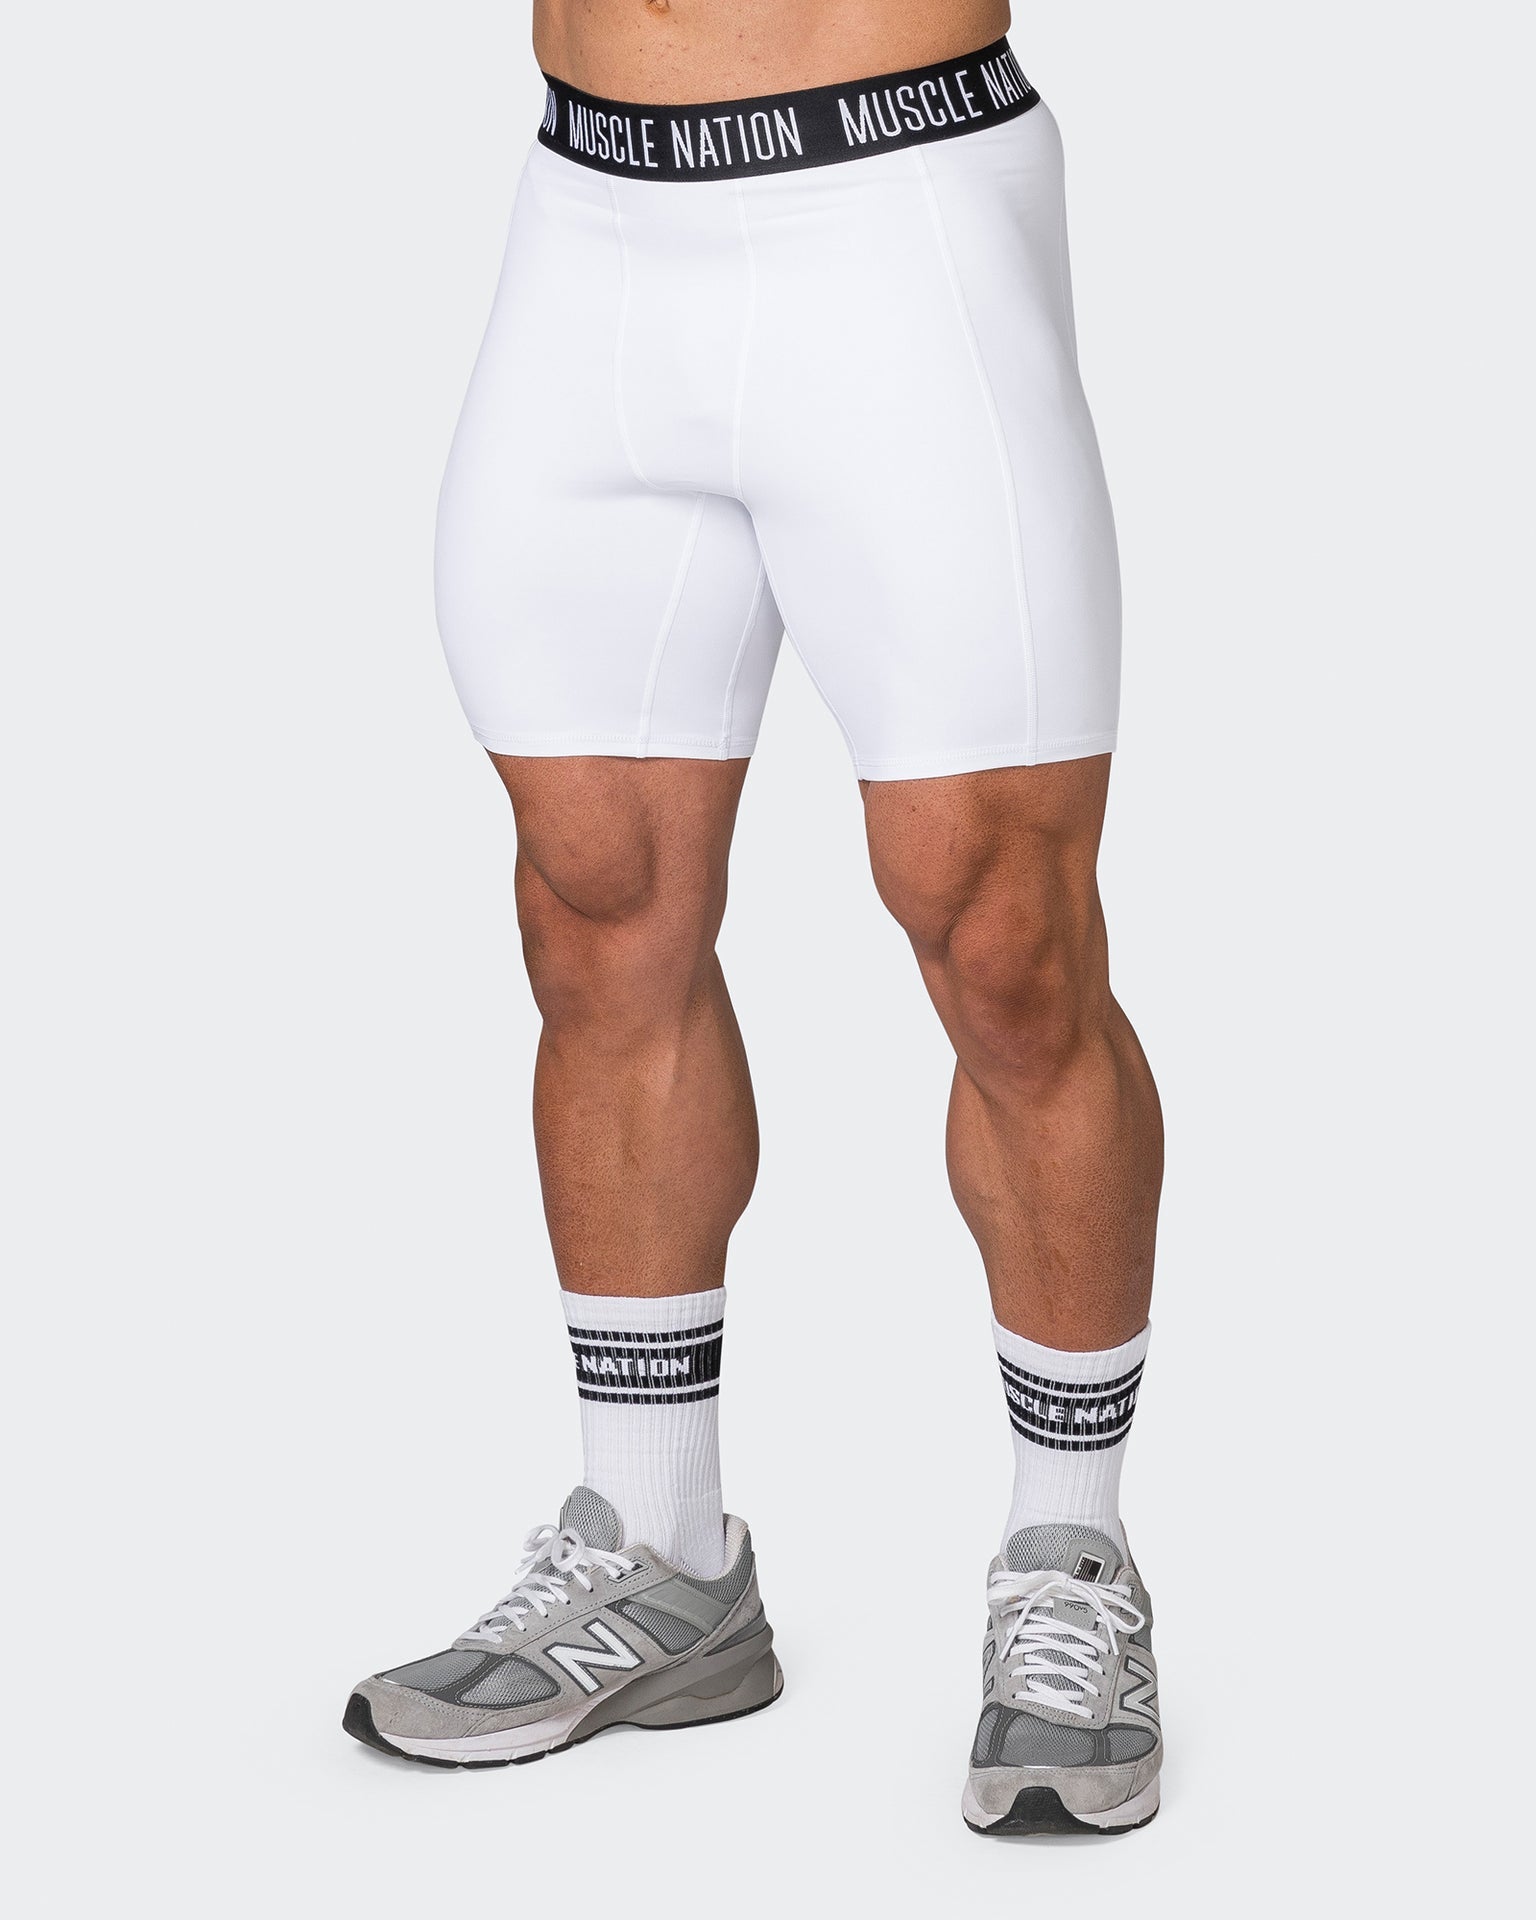 Muscle Nation Shorts Core 8" Training Shorts - White